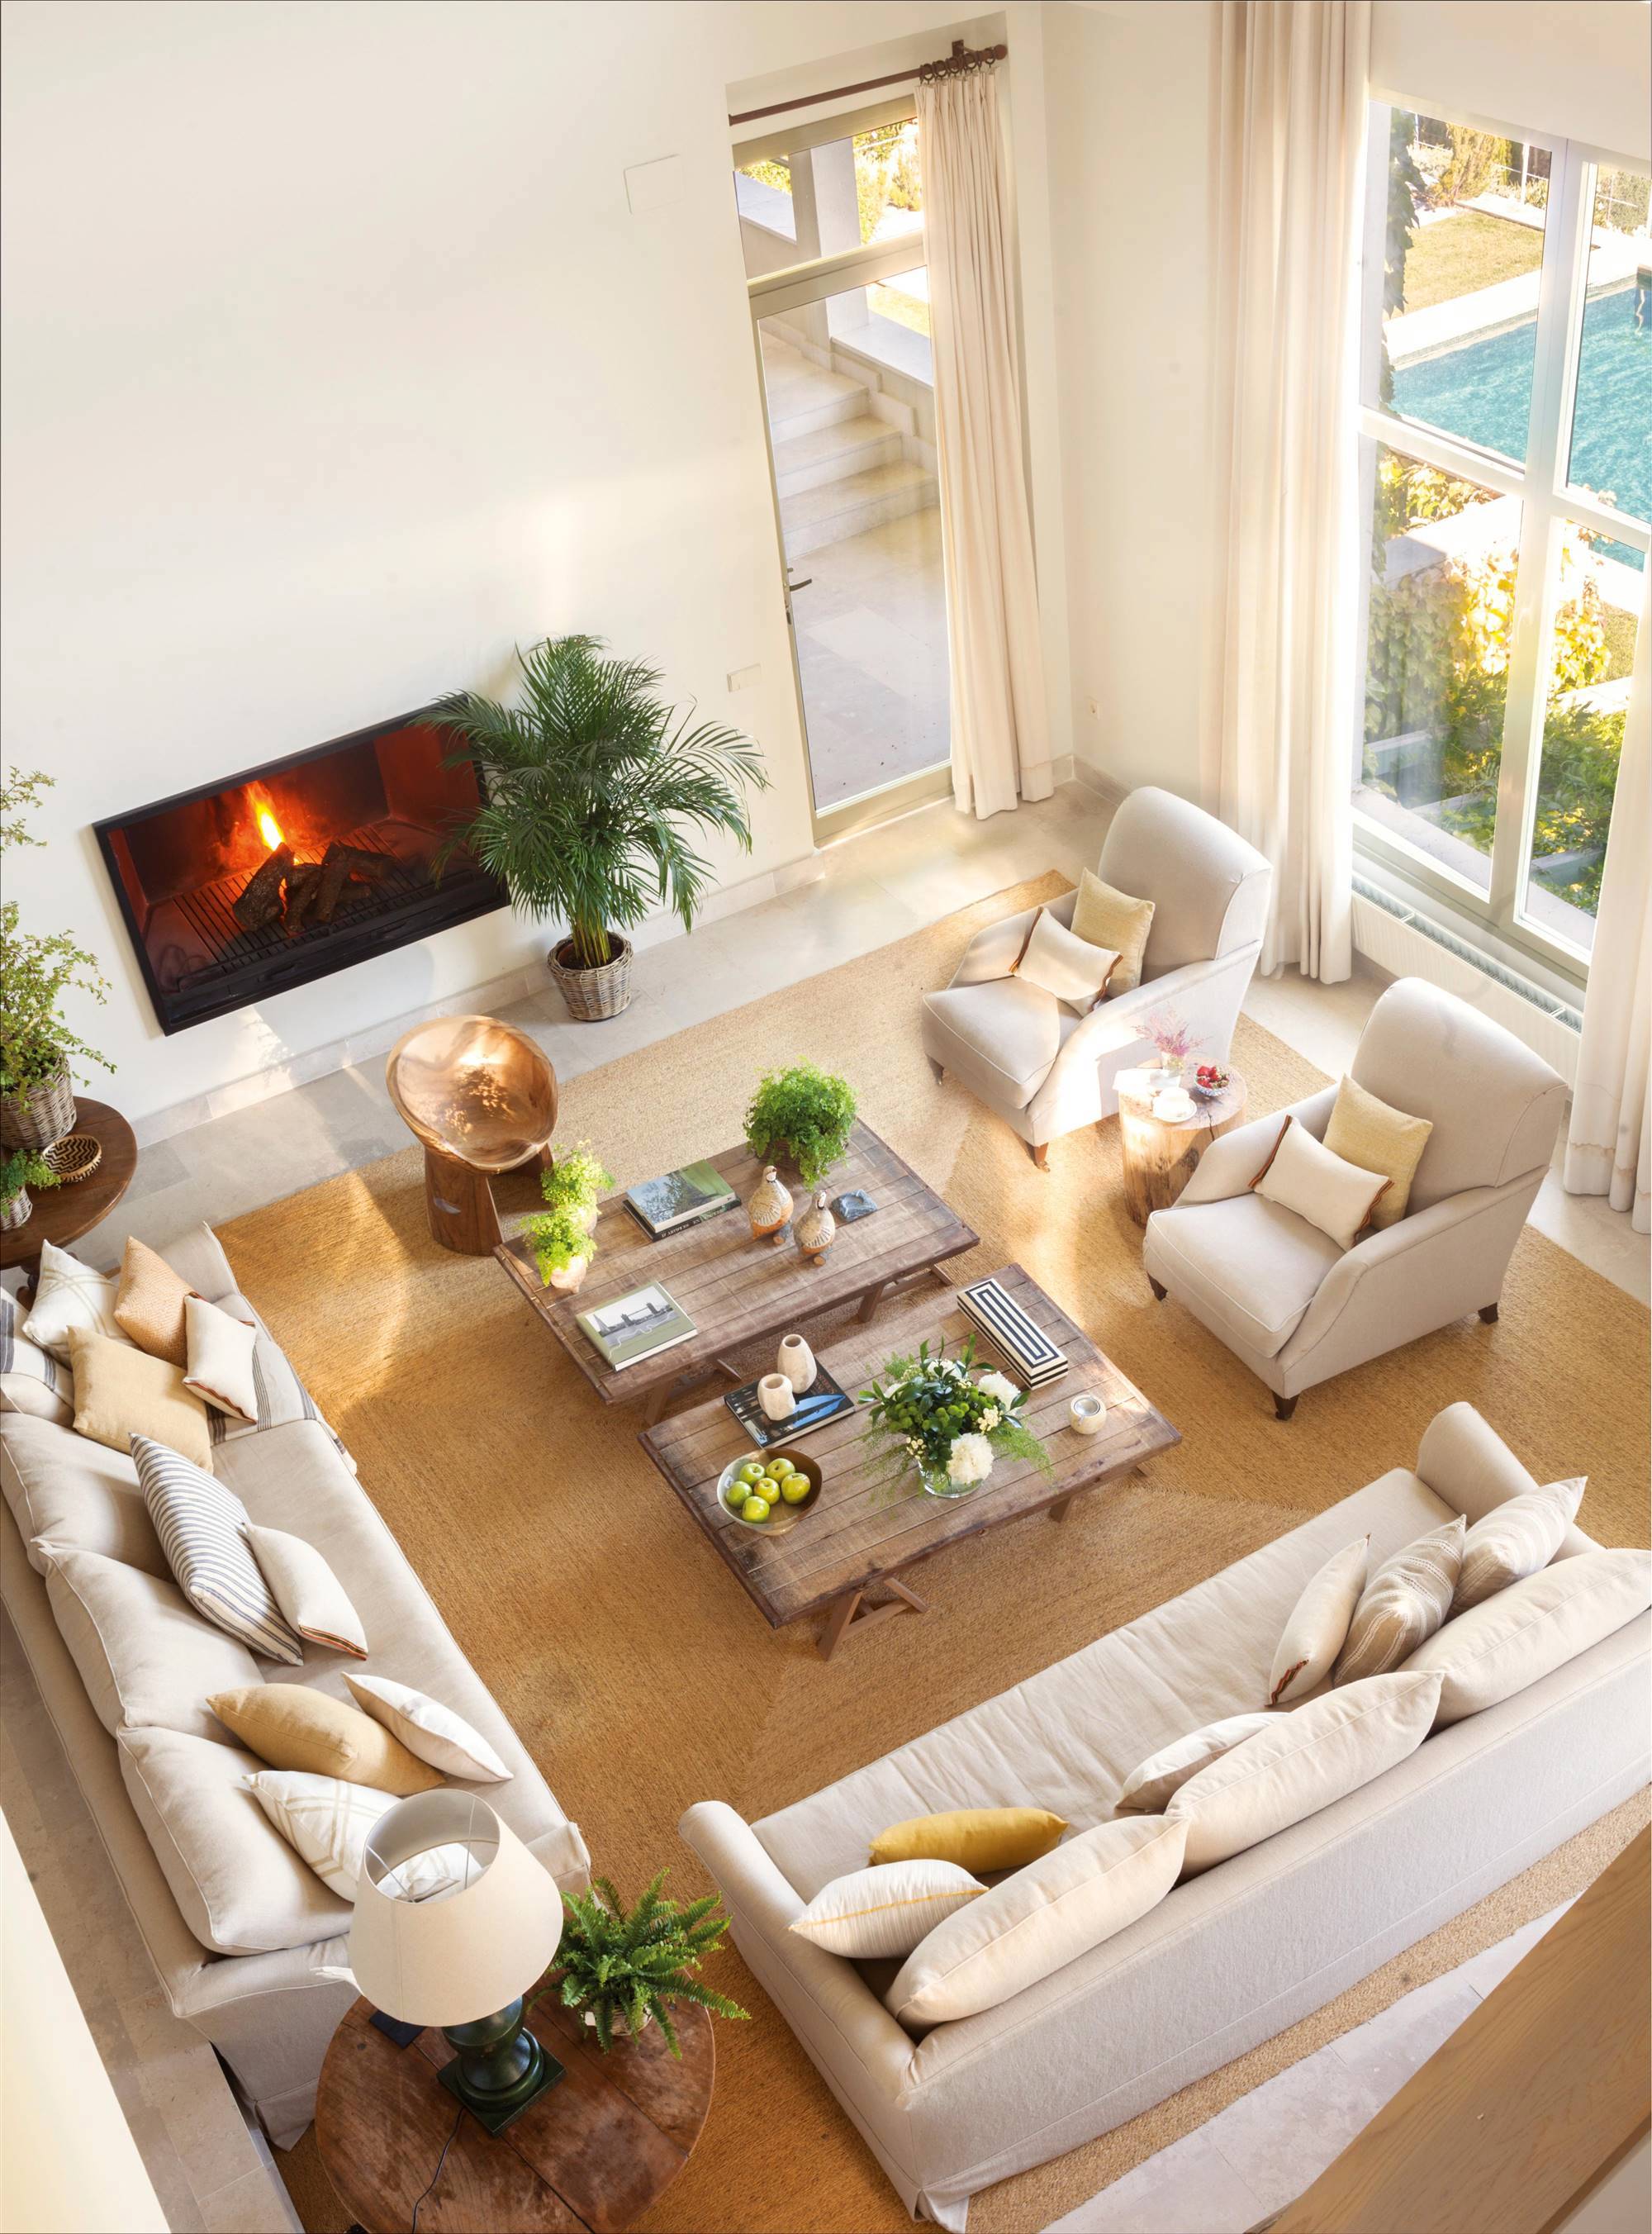 Vista cenital de salón con chimenea, sofás y butacas blancas y plantas.